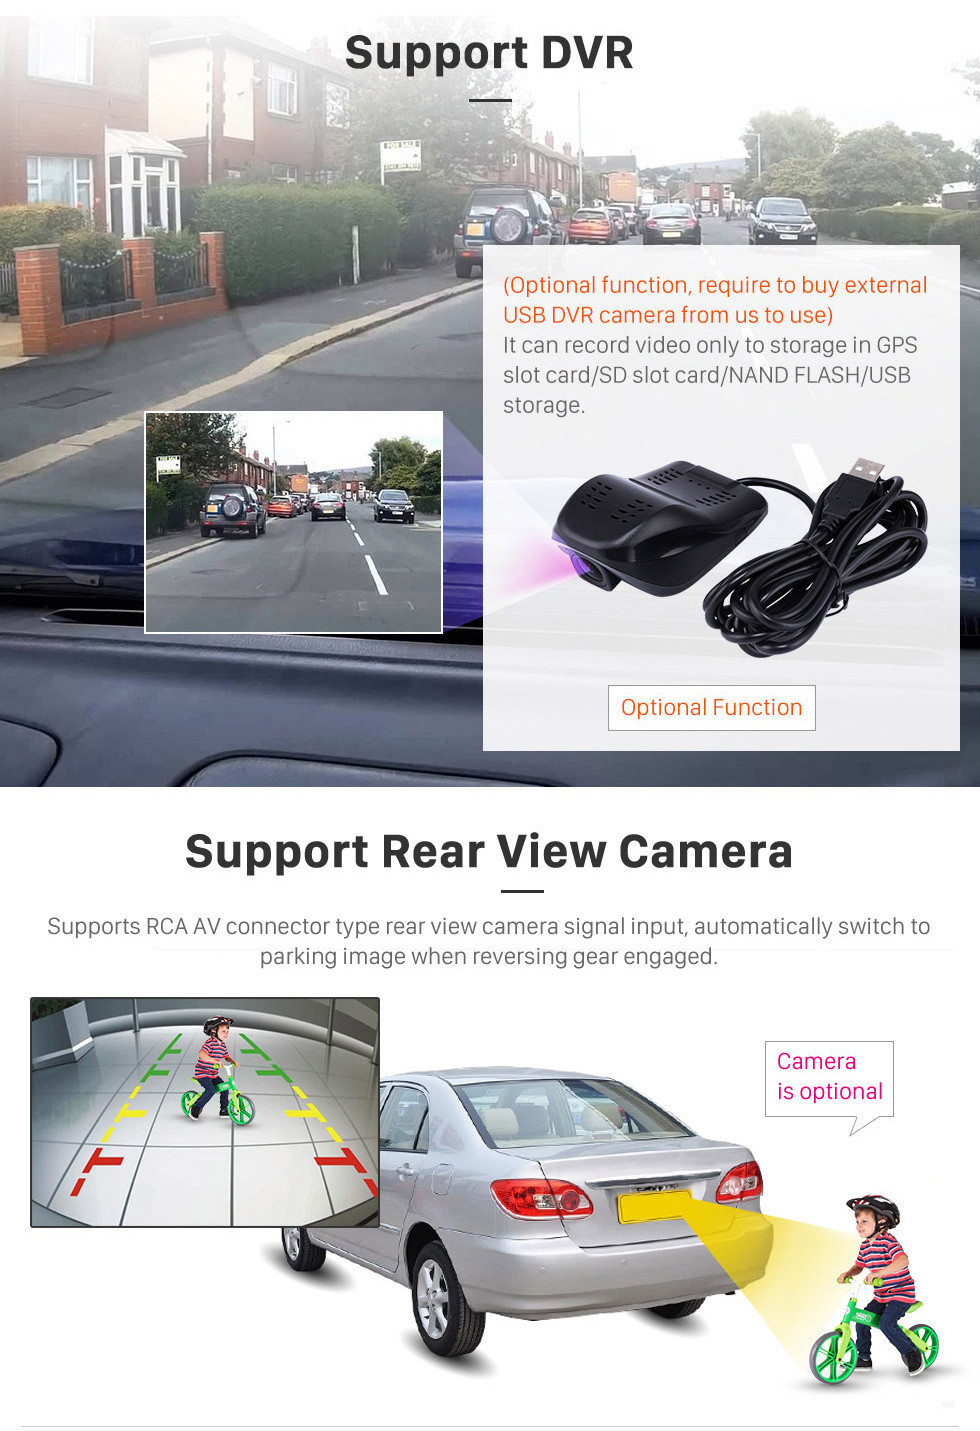 Seicane Écran tactile HD 9 pouces Android 10.0 Radio de navigation GPS pour 2004 Toyota Vios avec support Bluetooth Musique AUX DVR Carplay Commande au volant